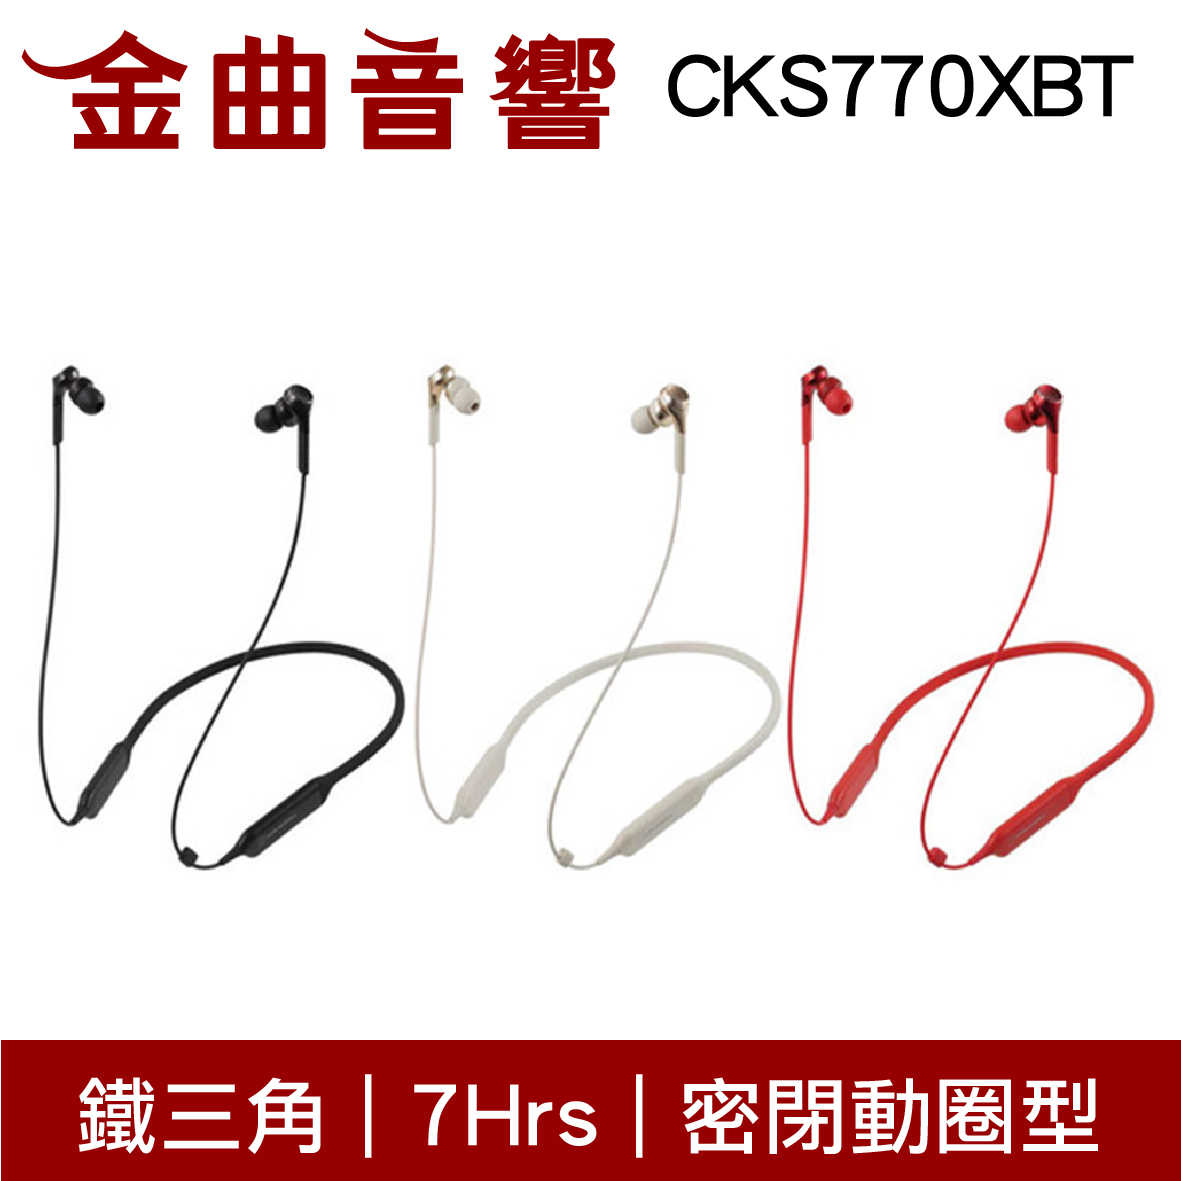 鐵三角 ATH-CKS770XBT 紅色 藍牙 耳機 無線 重低音 CKS770XBT | 金曲音響